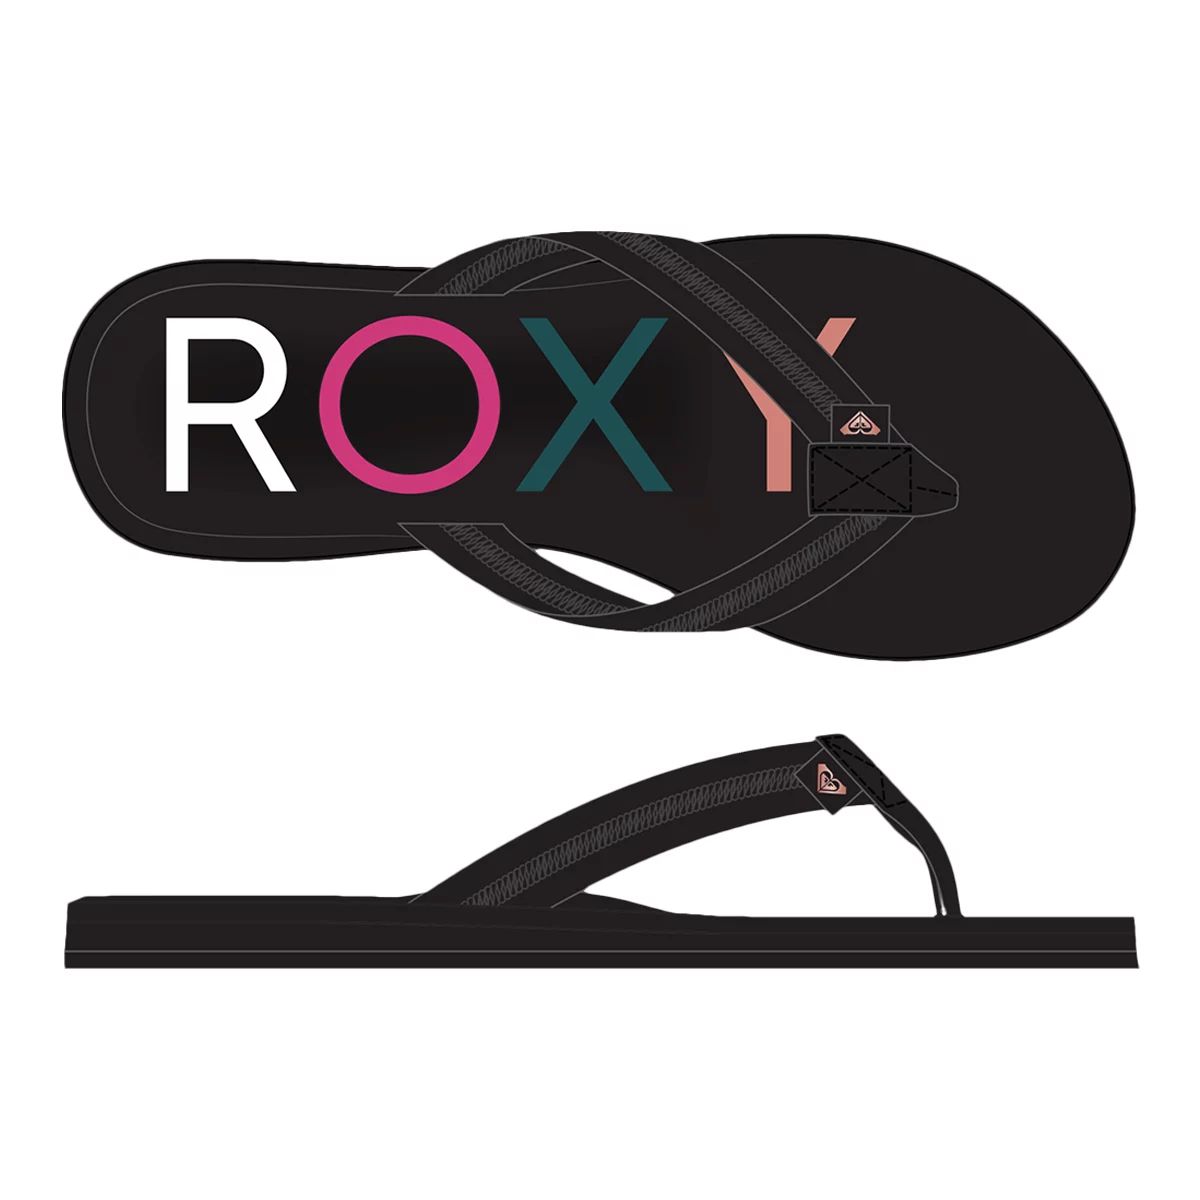  Roxy Women's Porto IIi Sandal, Black 20, 5